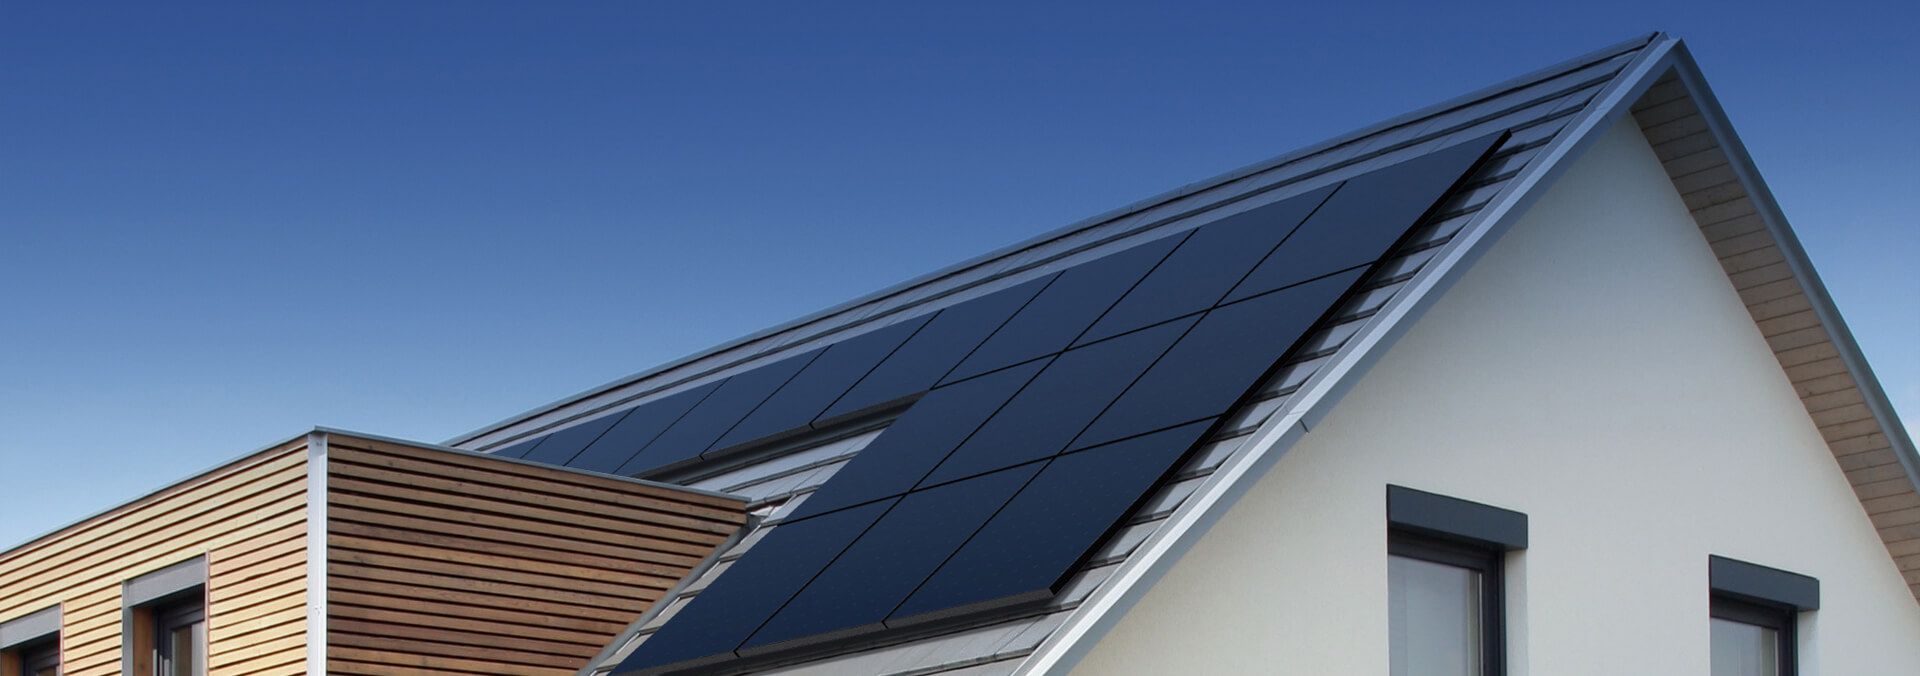 SunPower-Solar-Energy-Company-Solar-Rooftop